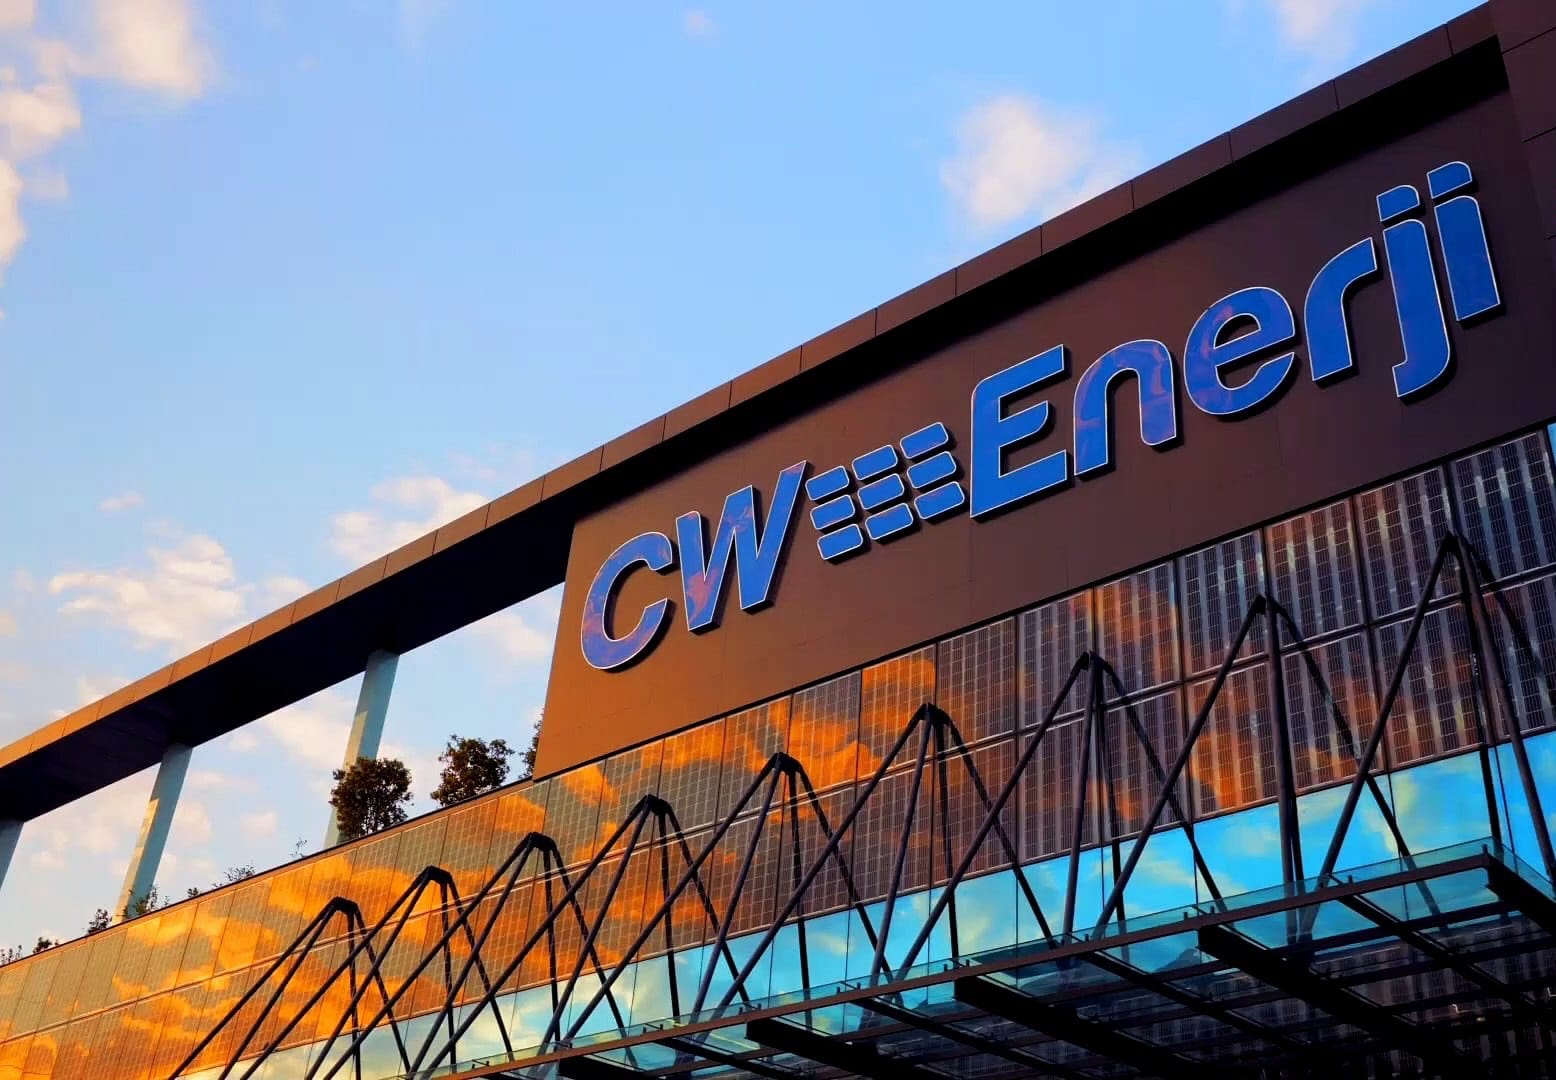 ÇED İzin ve Denetim Genel Müdürlüğü’nden CW Enerji'nin GES projesi hakkında açıklama cw enerji hisse yorum Rota Borsa